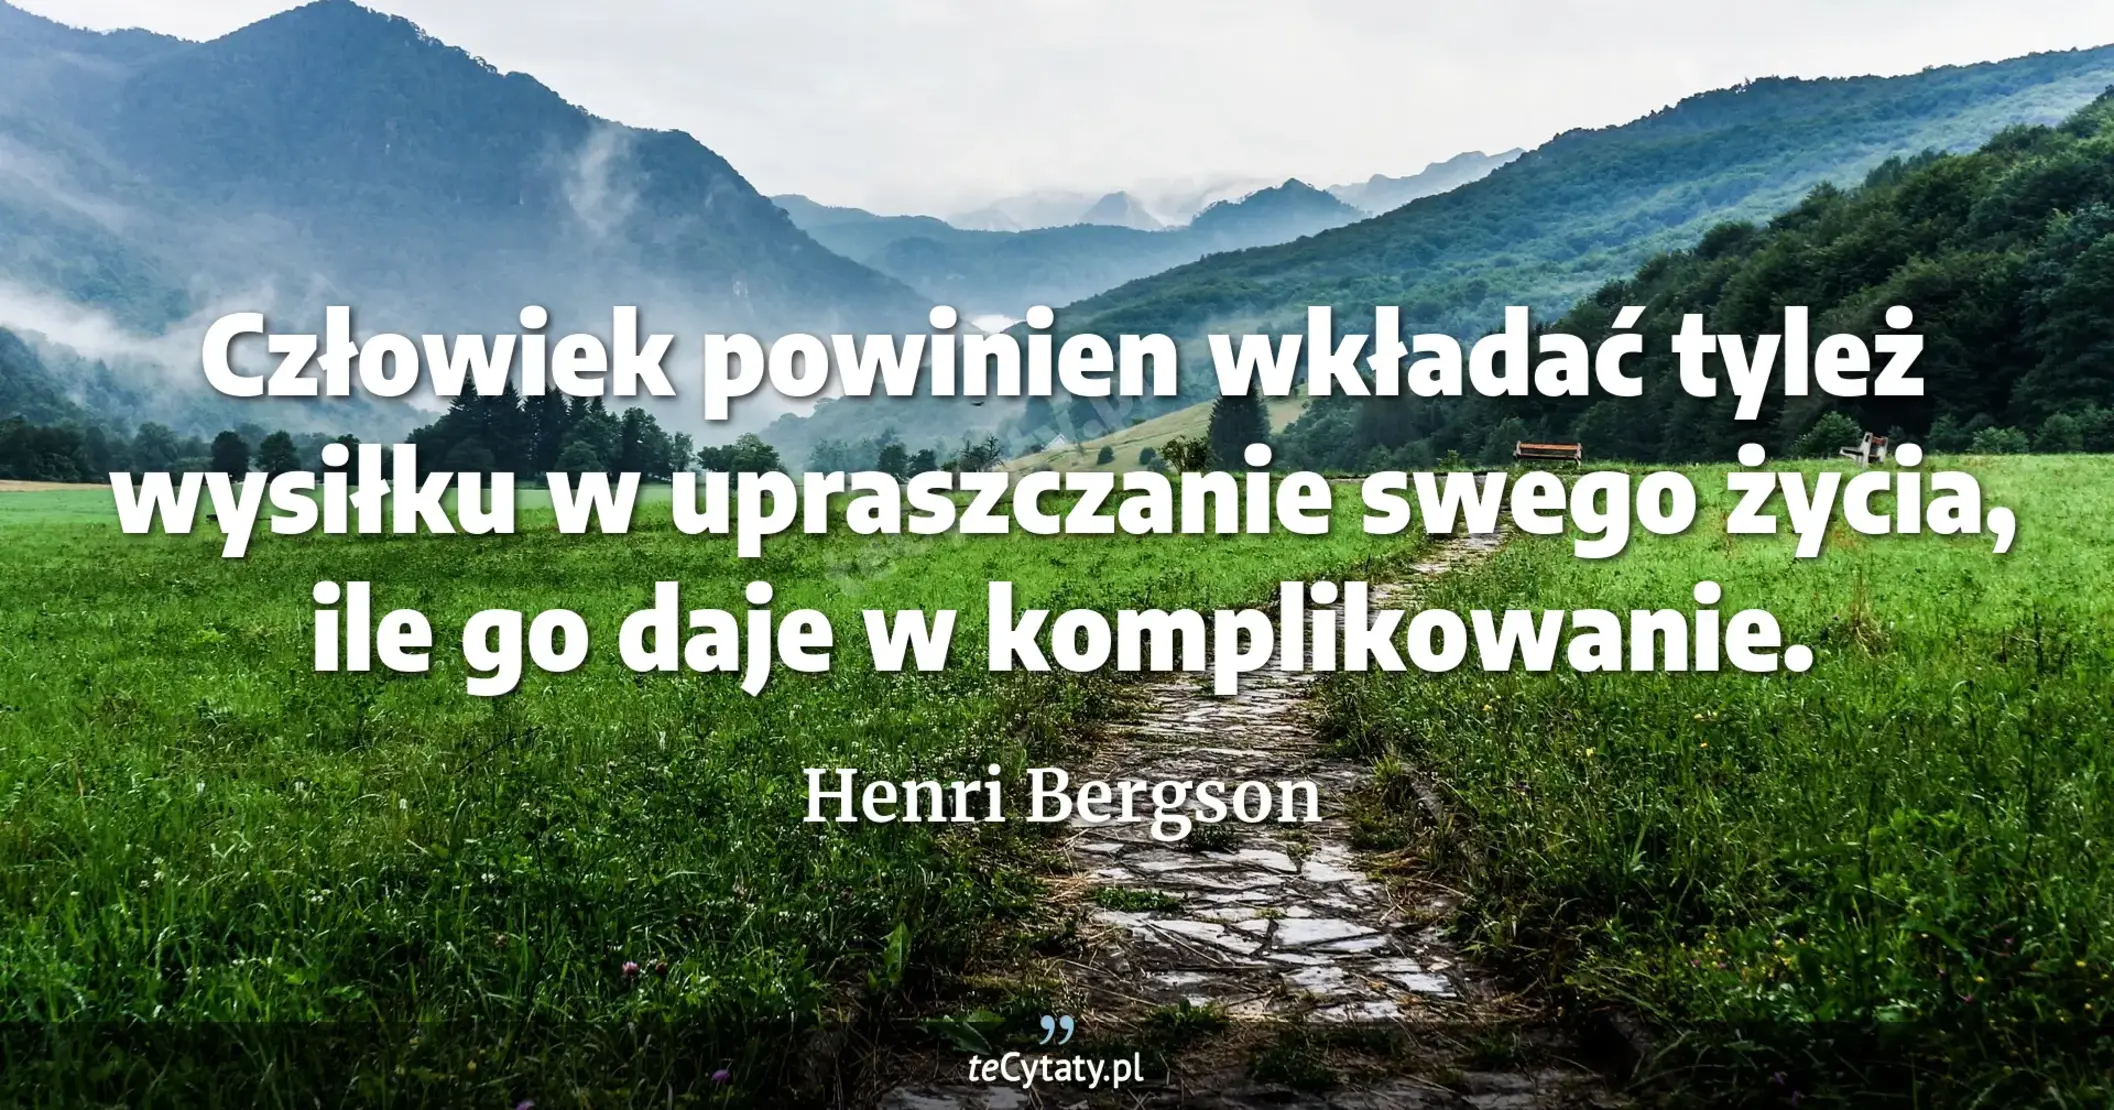 Człowiek powinien wkładać tyleż wysiłku w upraszczanie swego życia, ile go daje w komplikowanie. - Henri Bergson